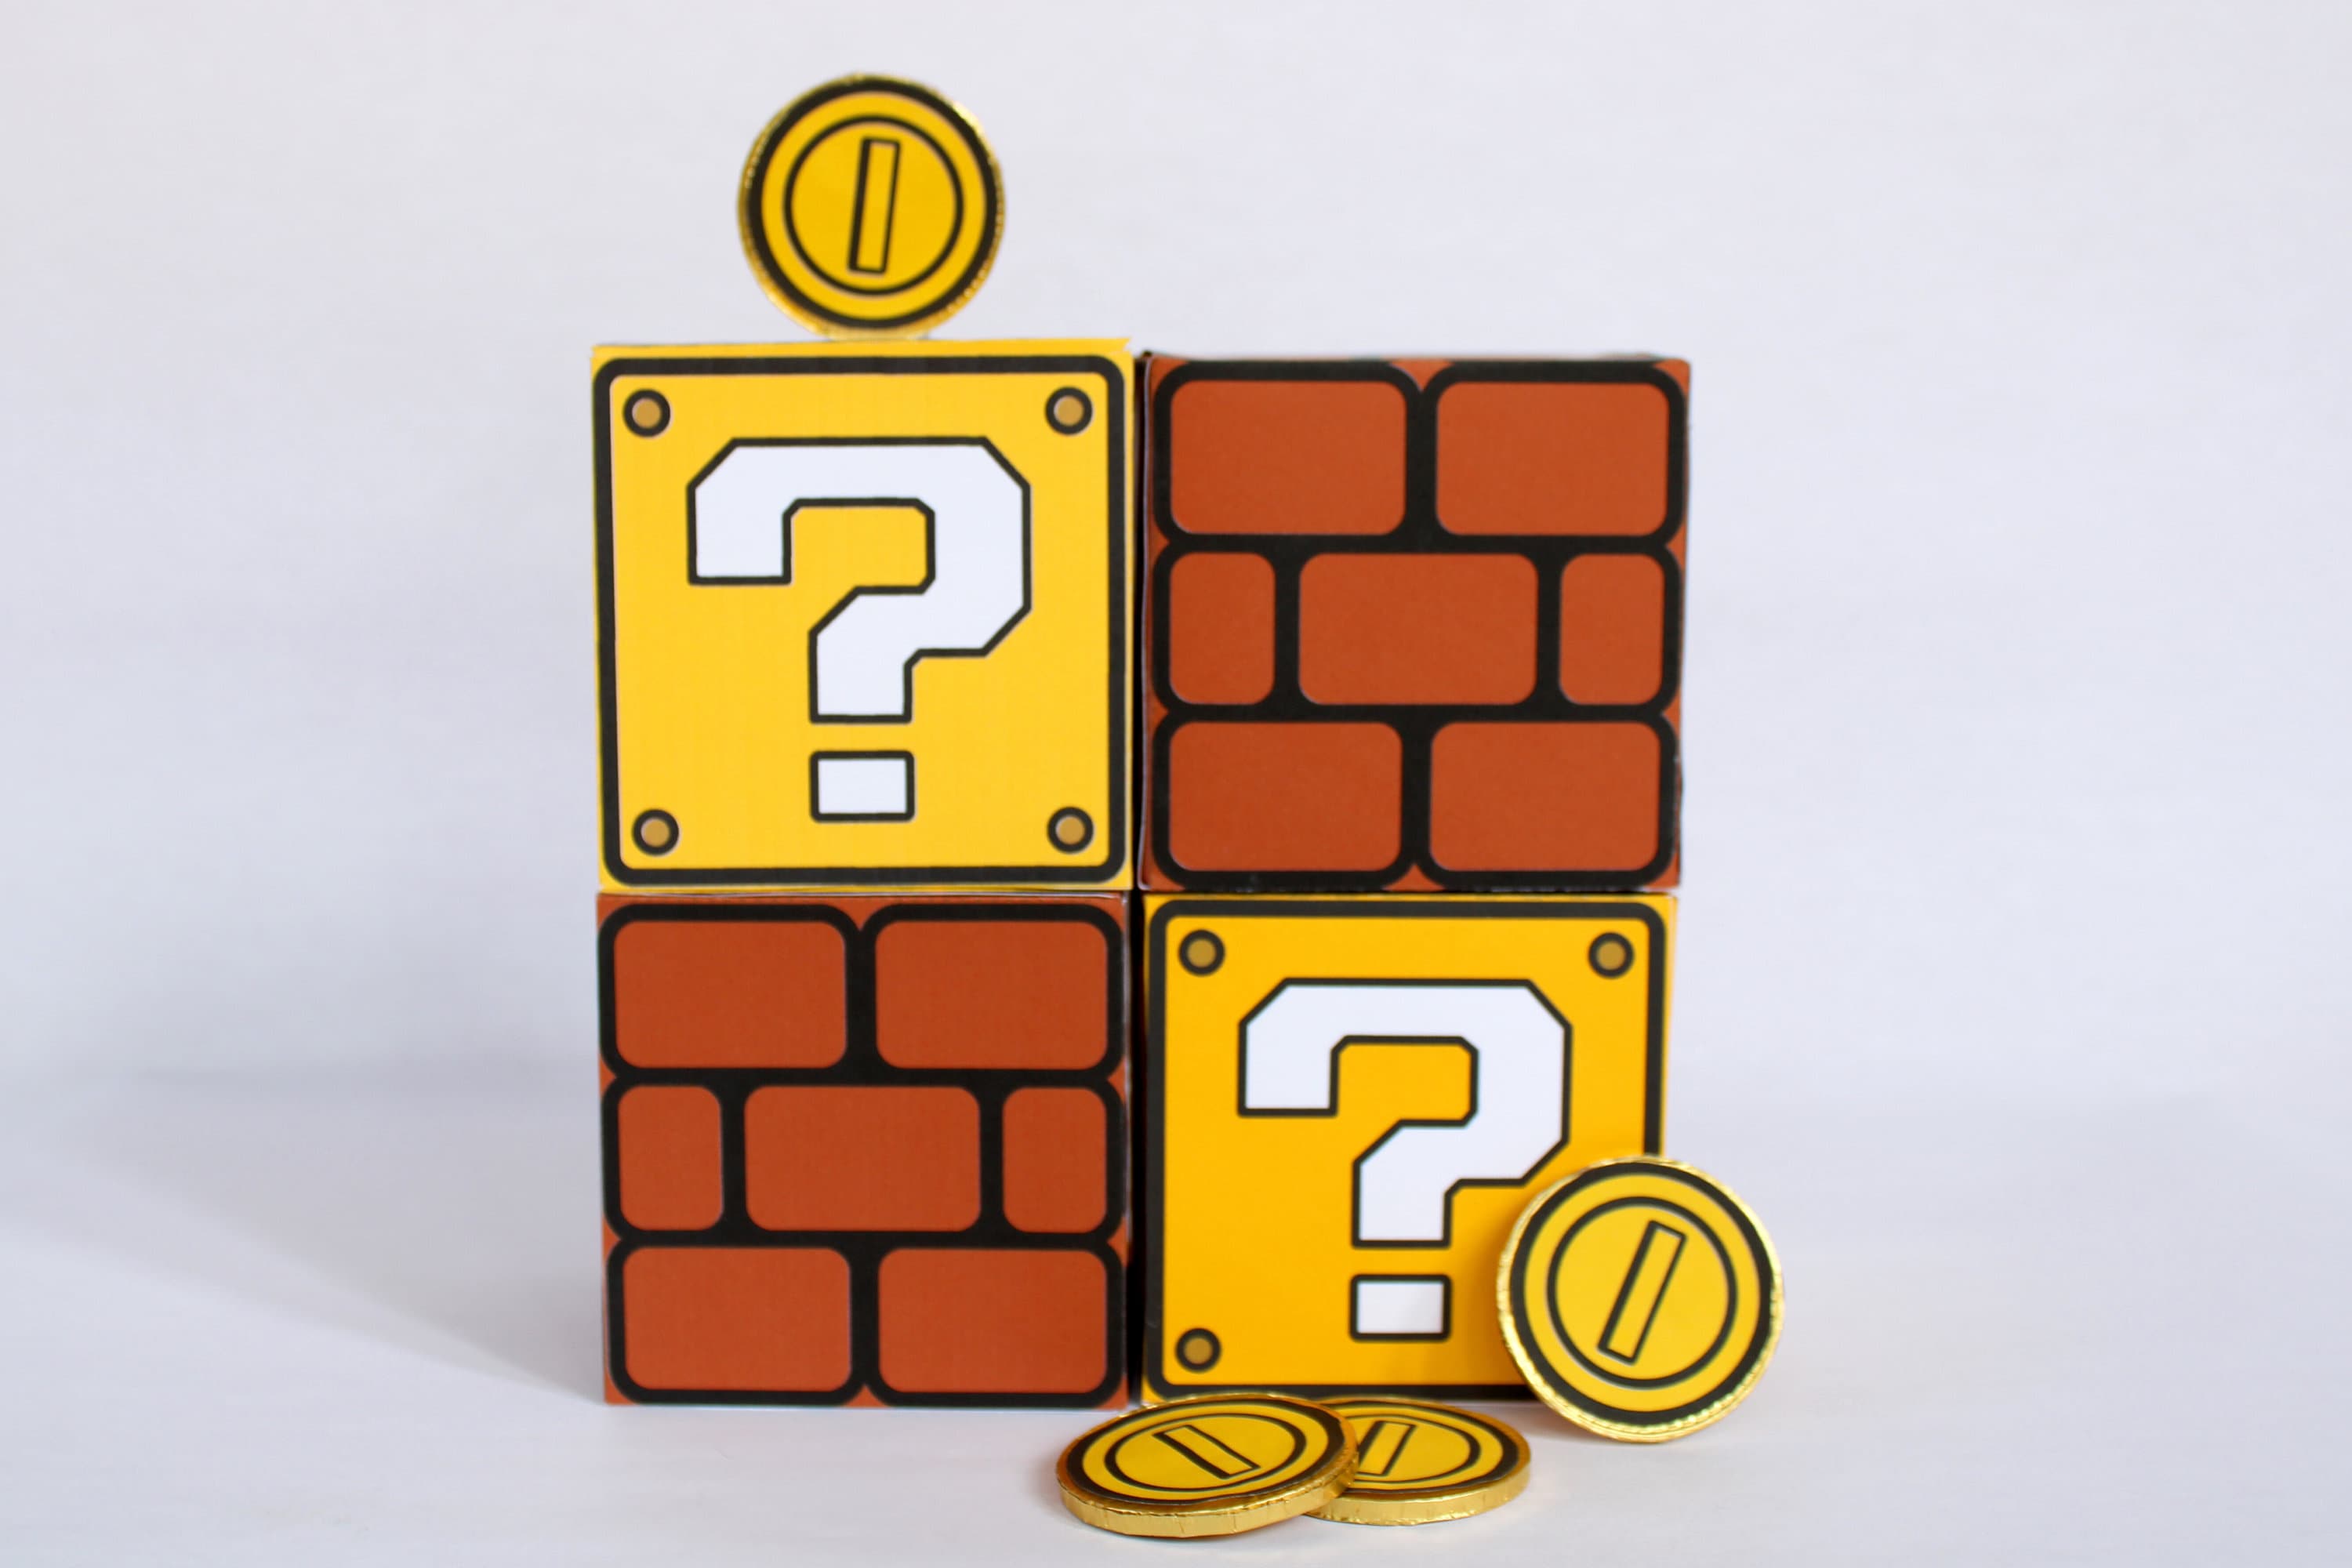 Mario Coin Block by mattkrocks on DeviantArt